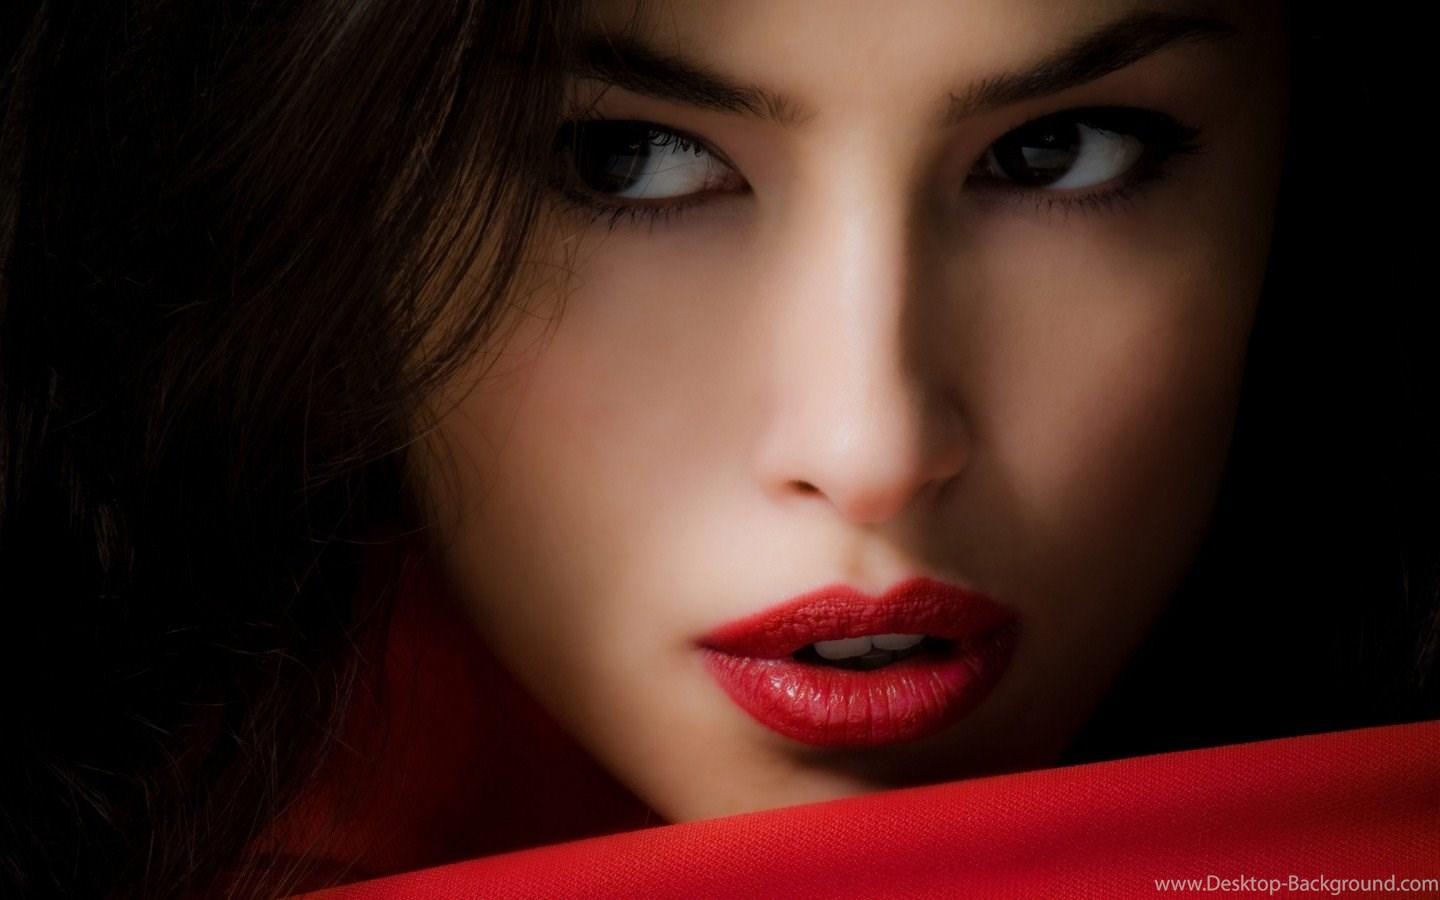 Lovely Girl Face Wallpaper HD Download Of Red Lips Girl Desktop